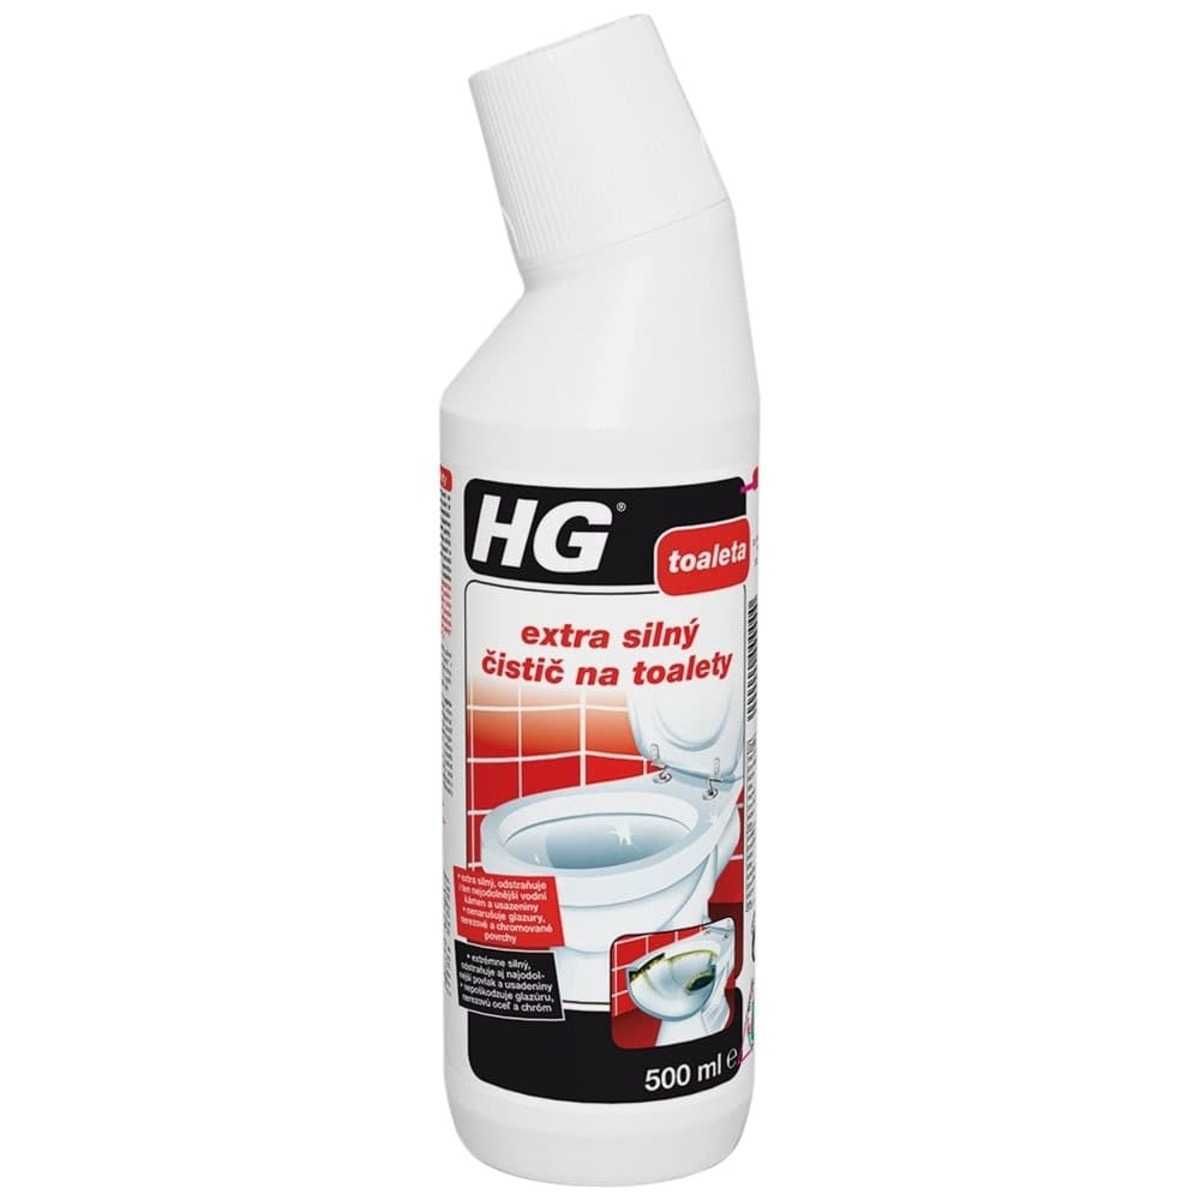 HG extra silný čistič na toalety HGESCT HG